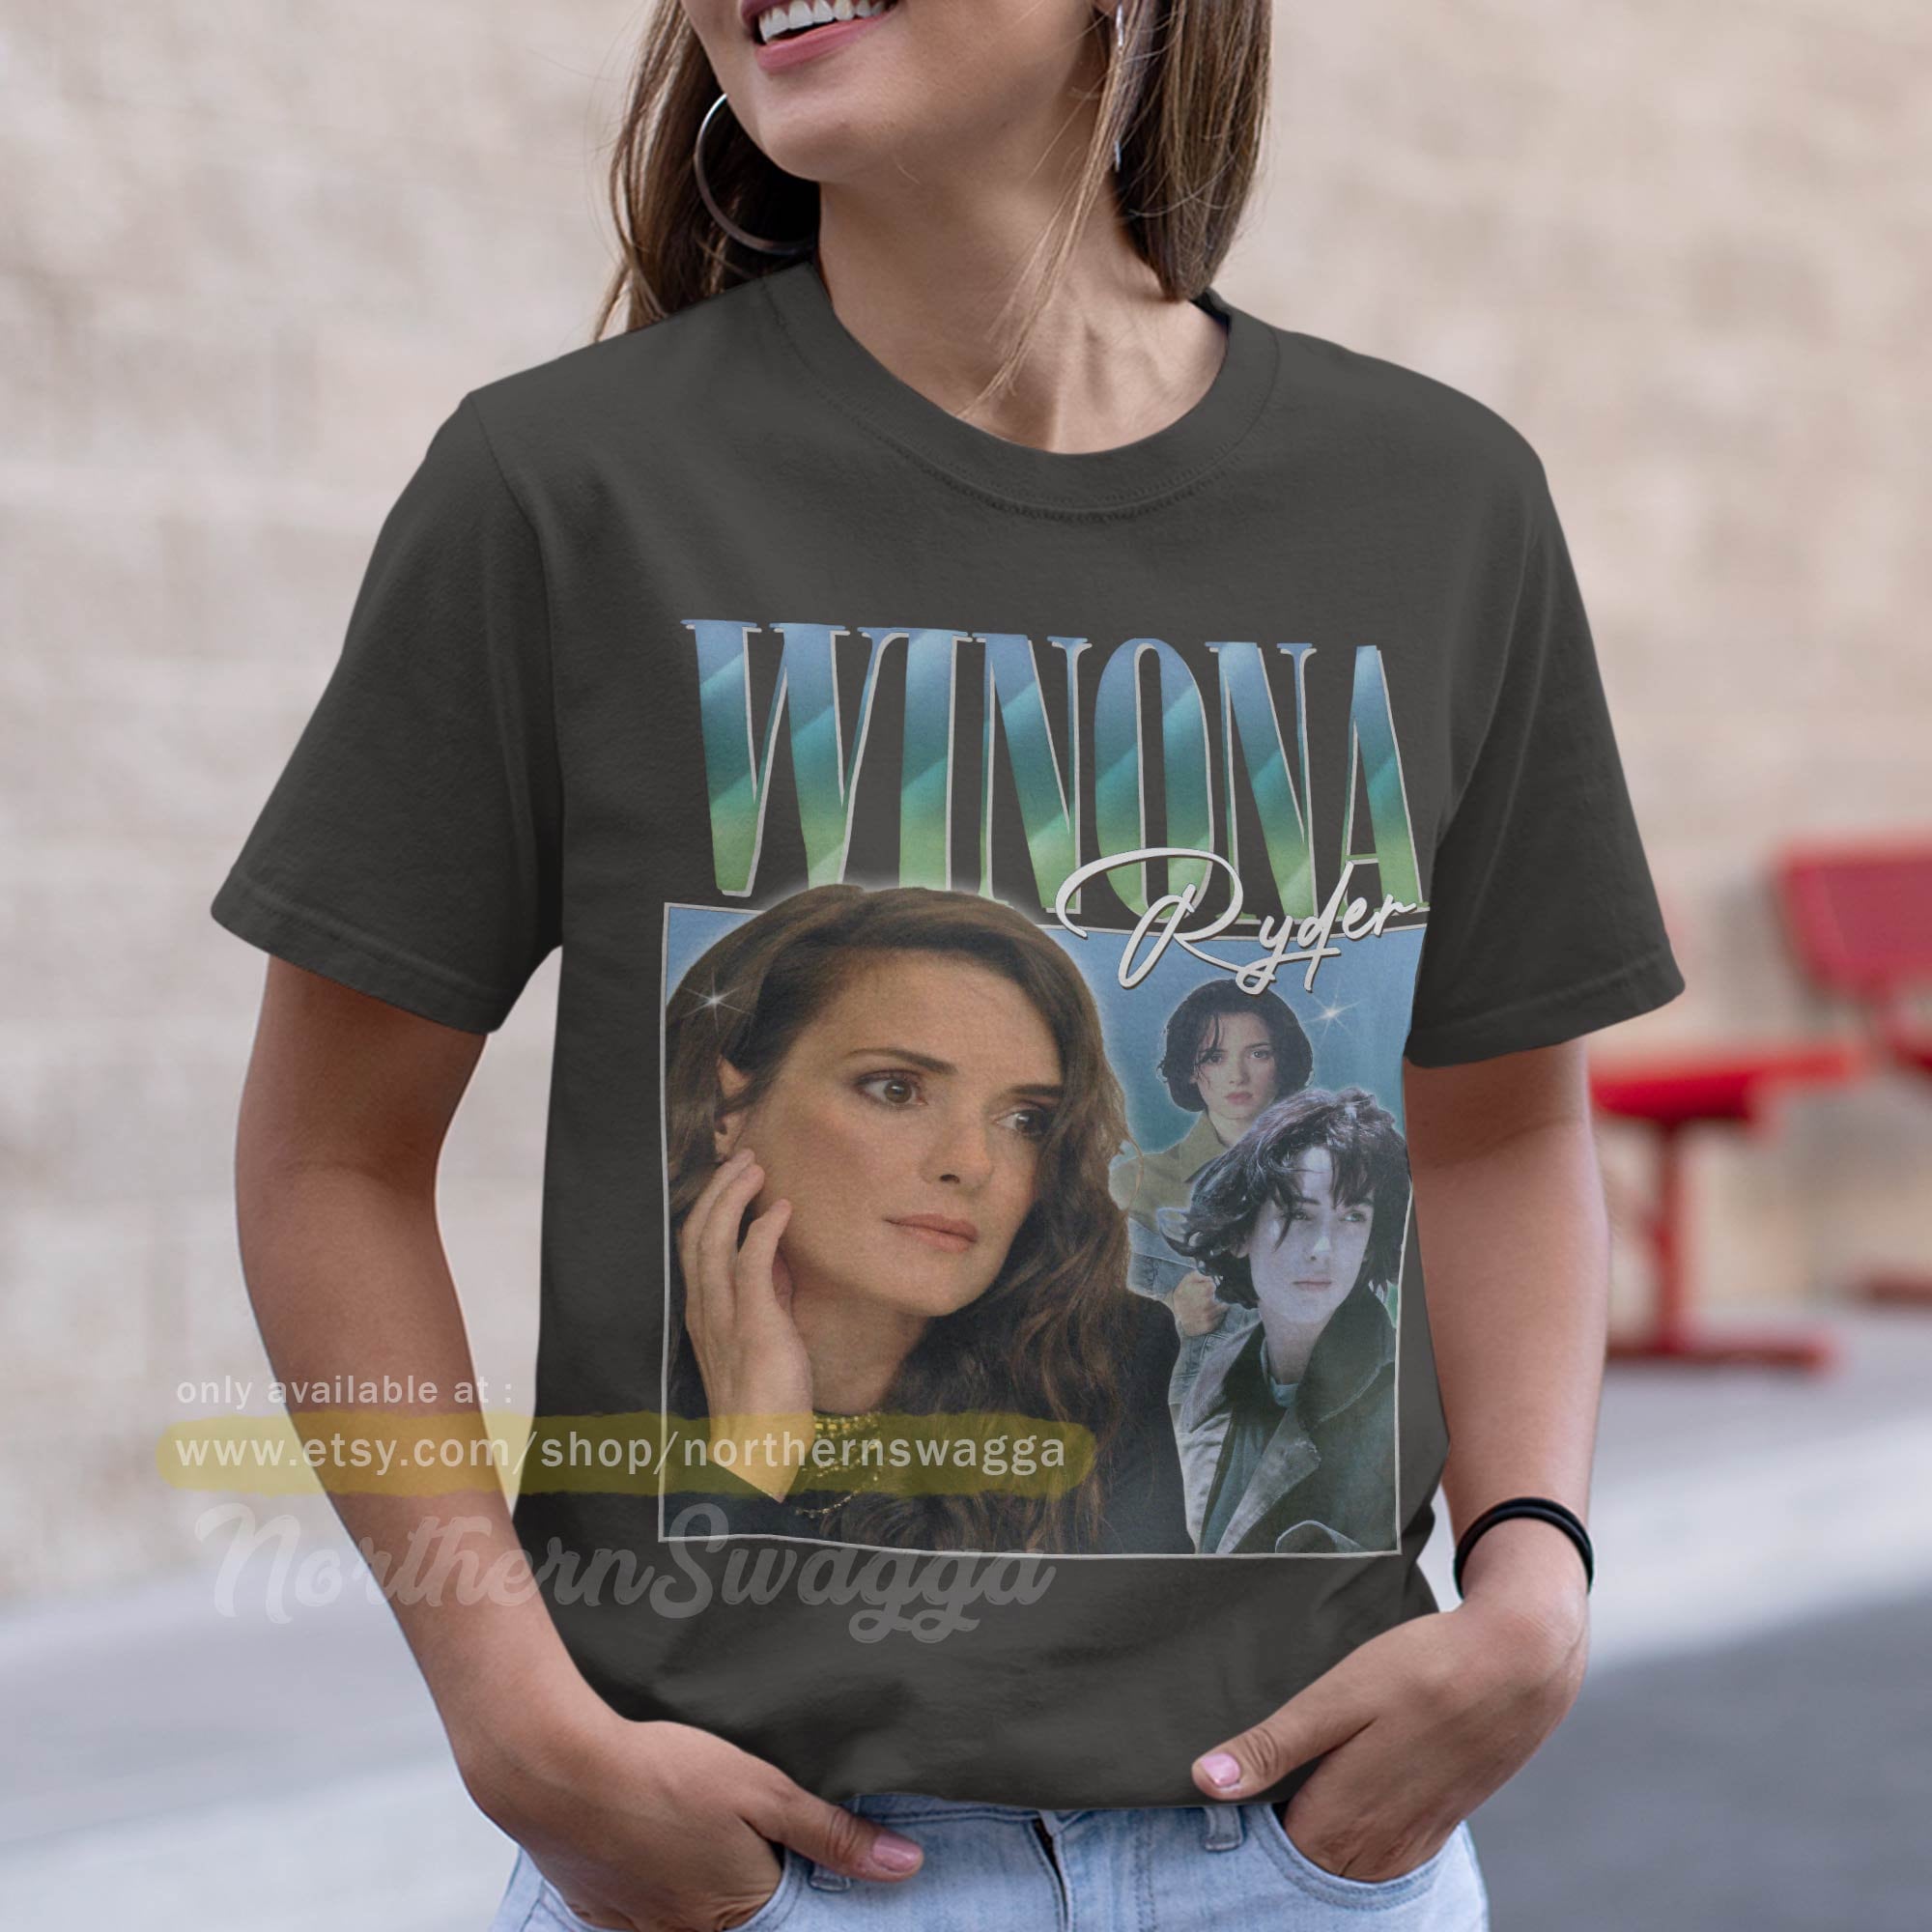 grammatik fravær Elastisk Winona Ryder Shirt Design Retro Style Cool Fan Art T-shirt 90s - Etsy